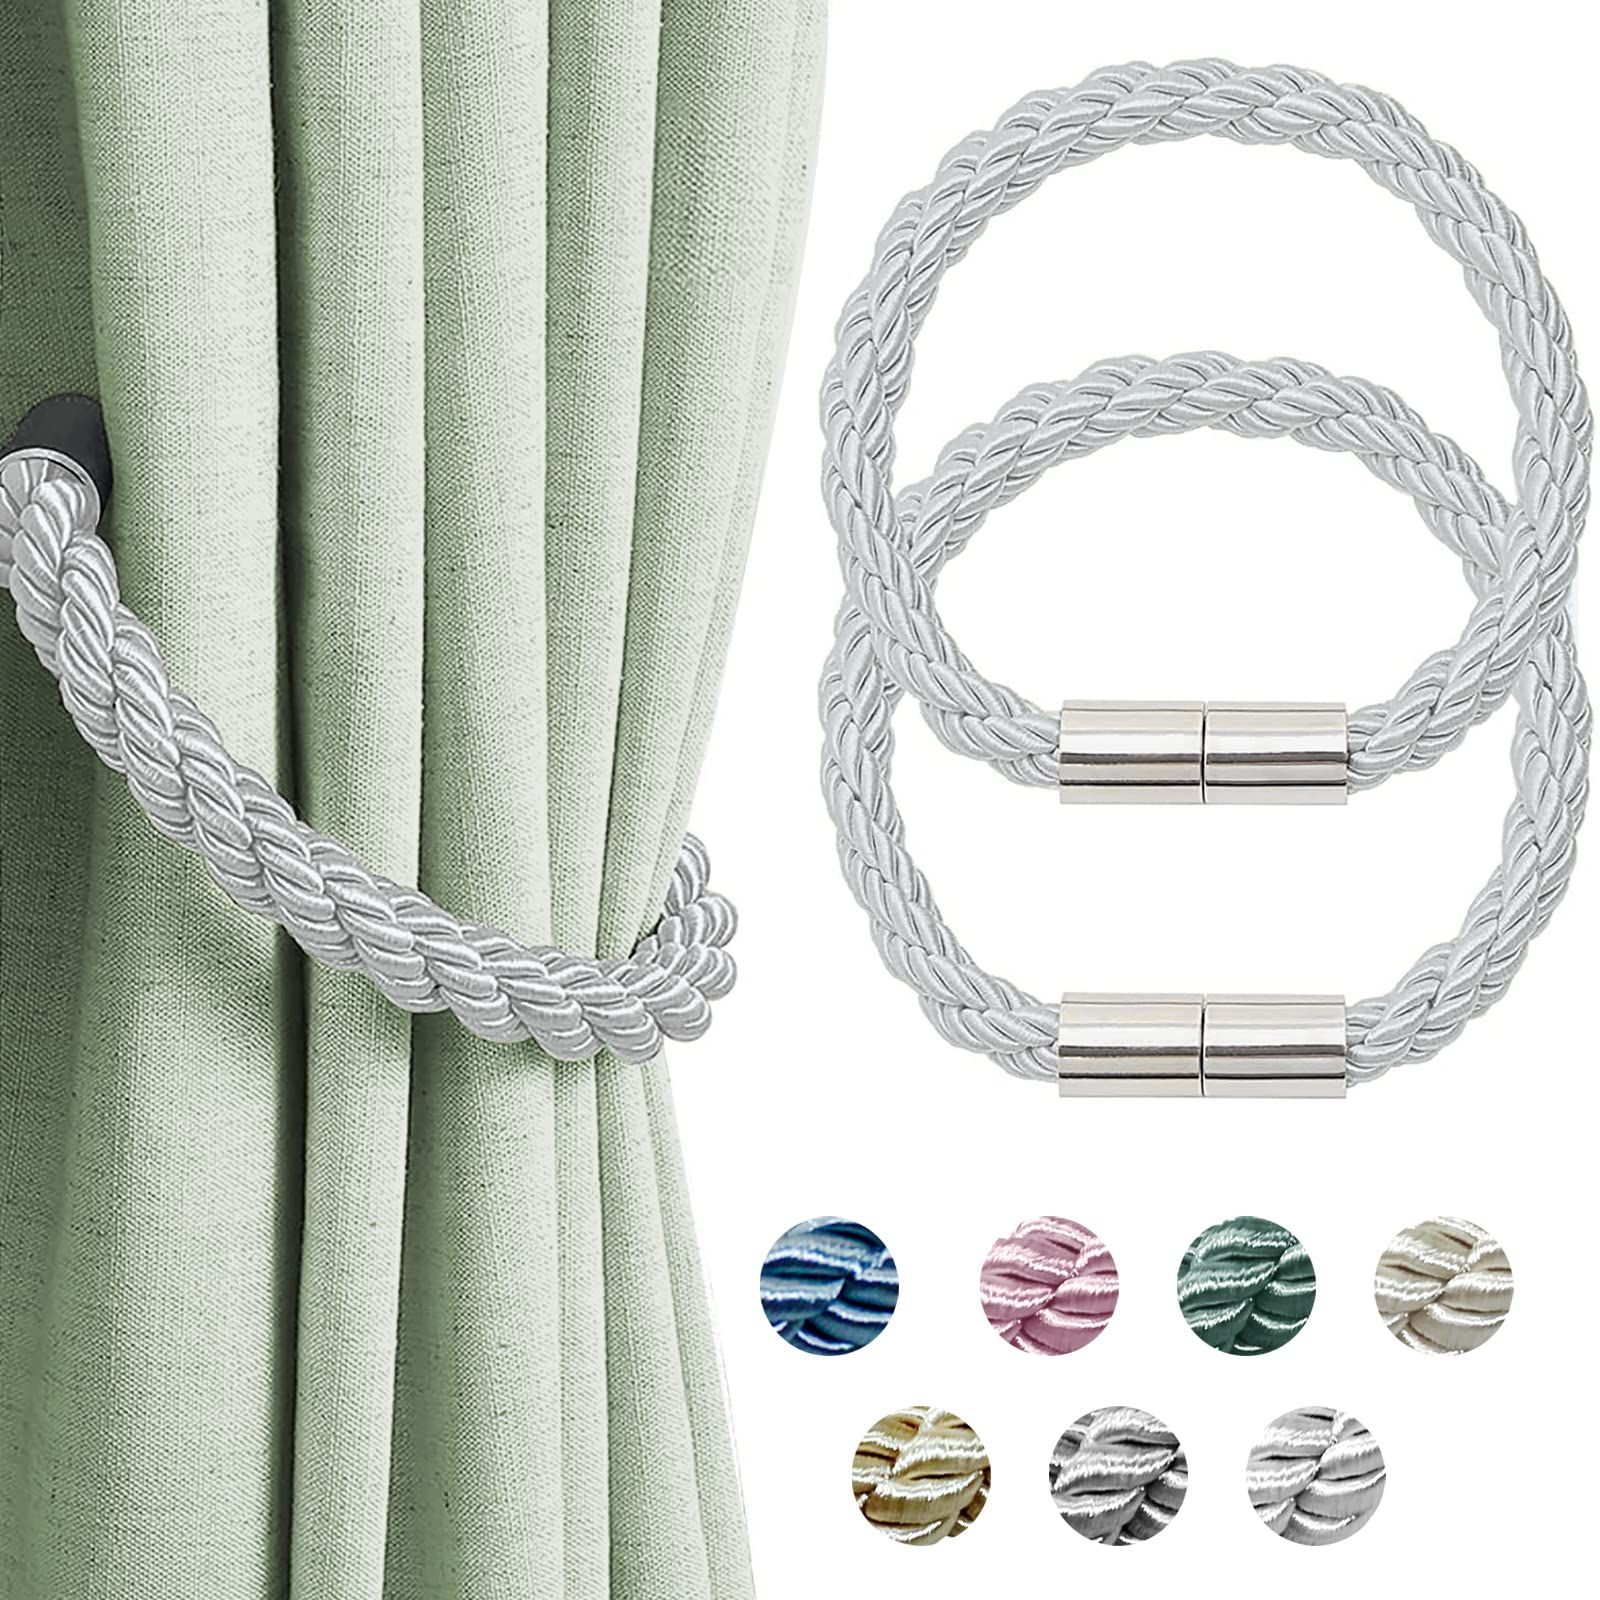 VIKIMORA Curtain Tiebacks 2 Pack Silvery White Curtain Holdbacks Tie for Drapery, Magnetic Curtai... | Amazon (US)